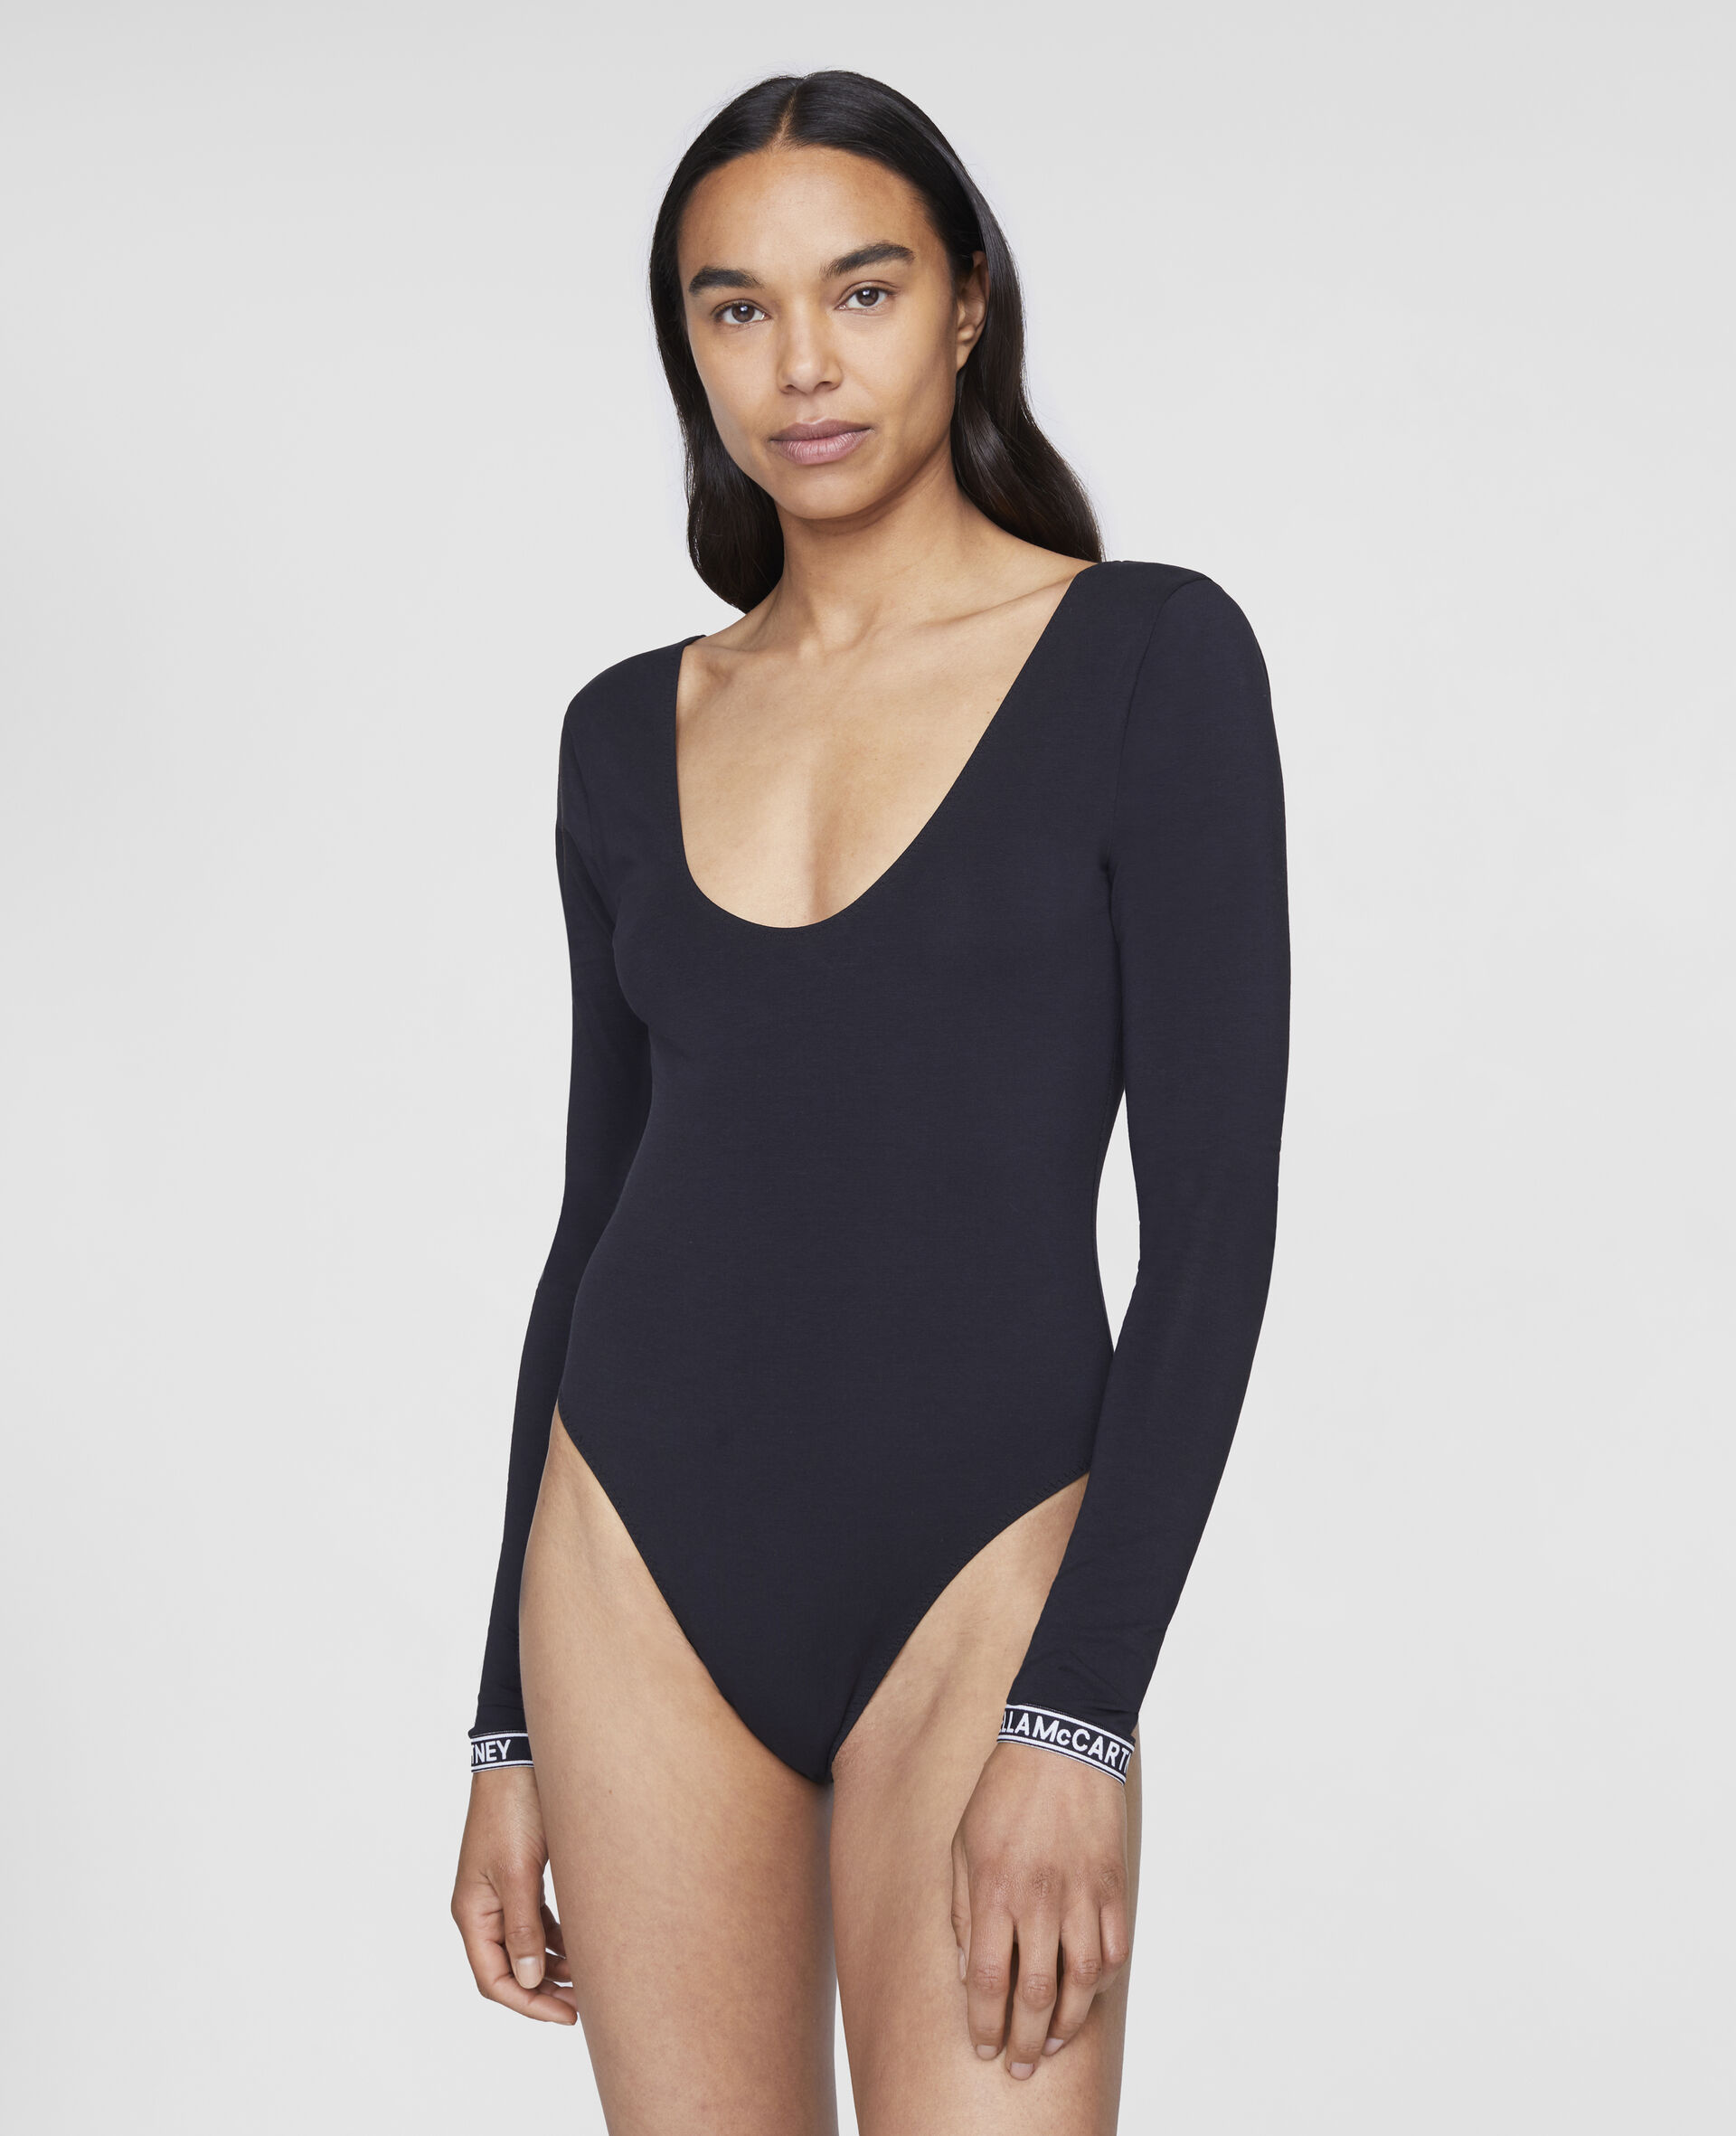 Ivy Chatting Long Sleeved Bodysuit-Black-large image number 1